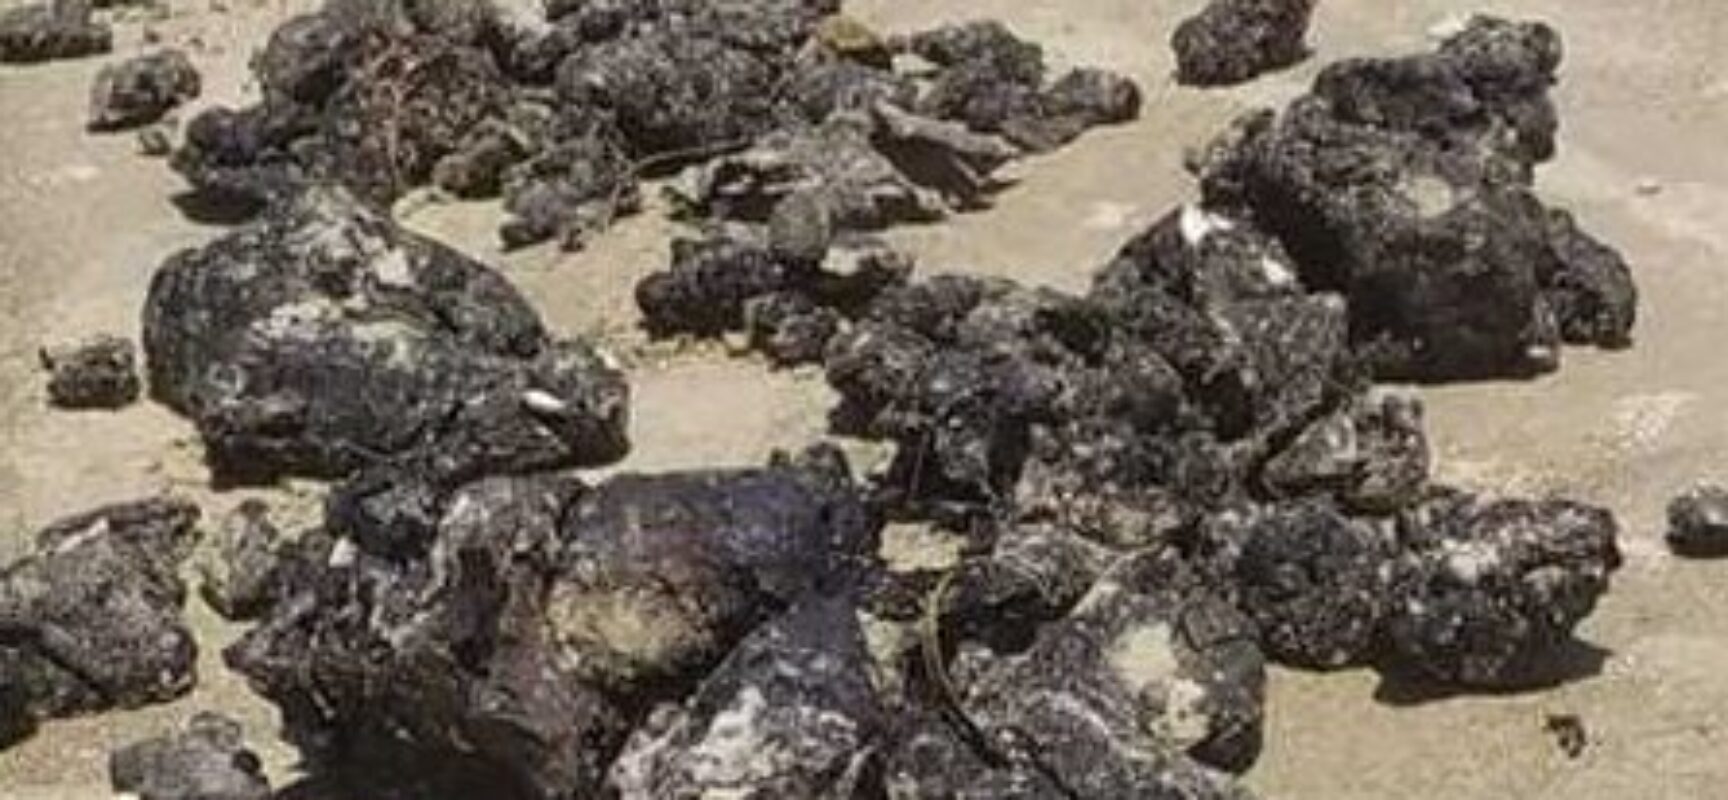 Prefeitura de Ilhéus e Marinha monitoram fragmentos de óleo encontrados na Praia da Ponta do Ramo